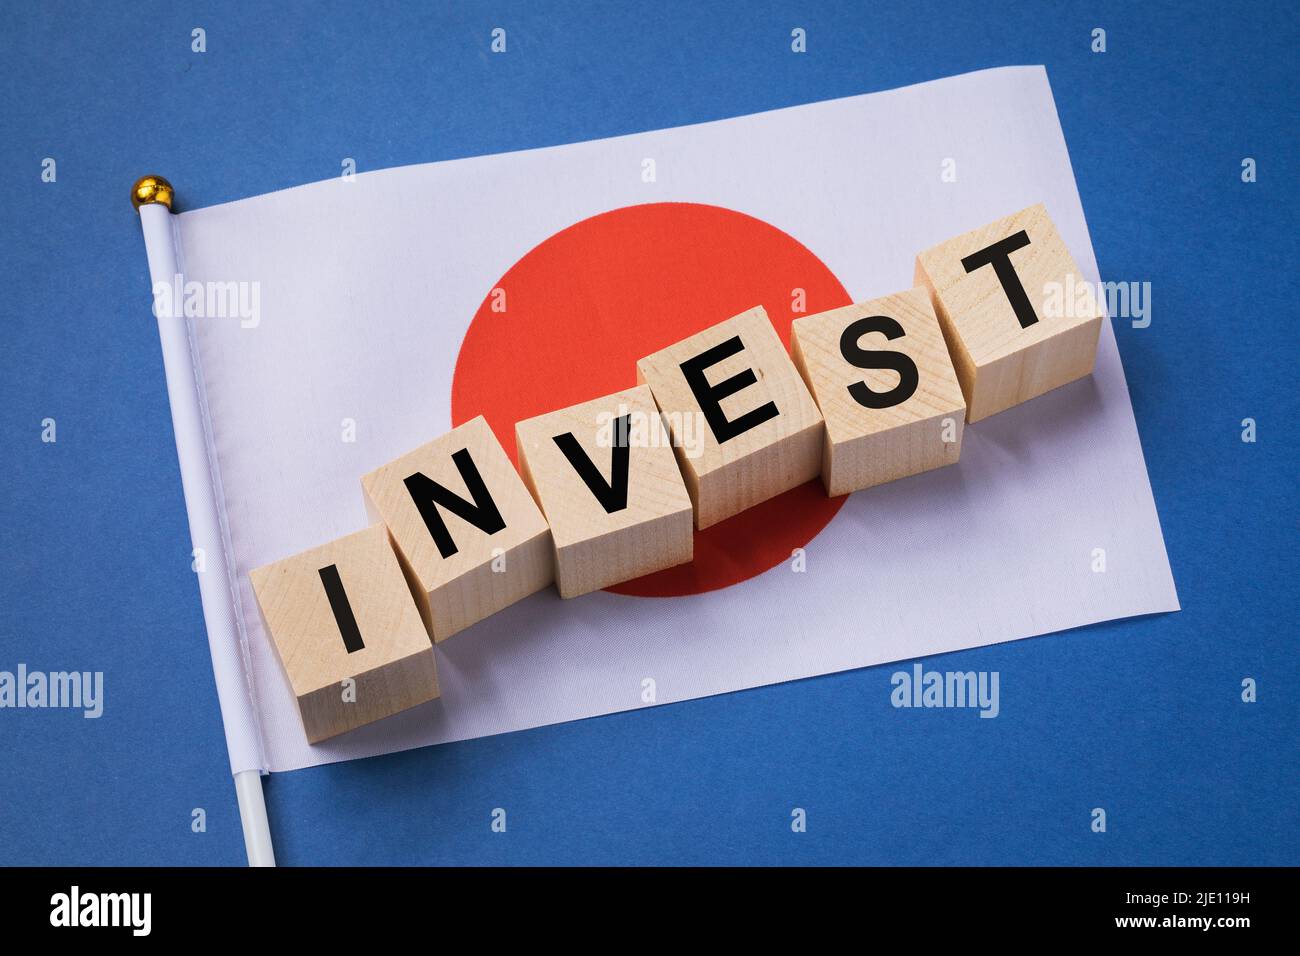 Cubos de madera con texto y bandera sobre fondo coloreado, concepto de inversión de Japón Foto de stock